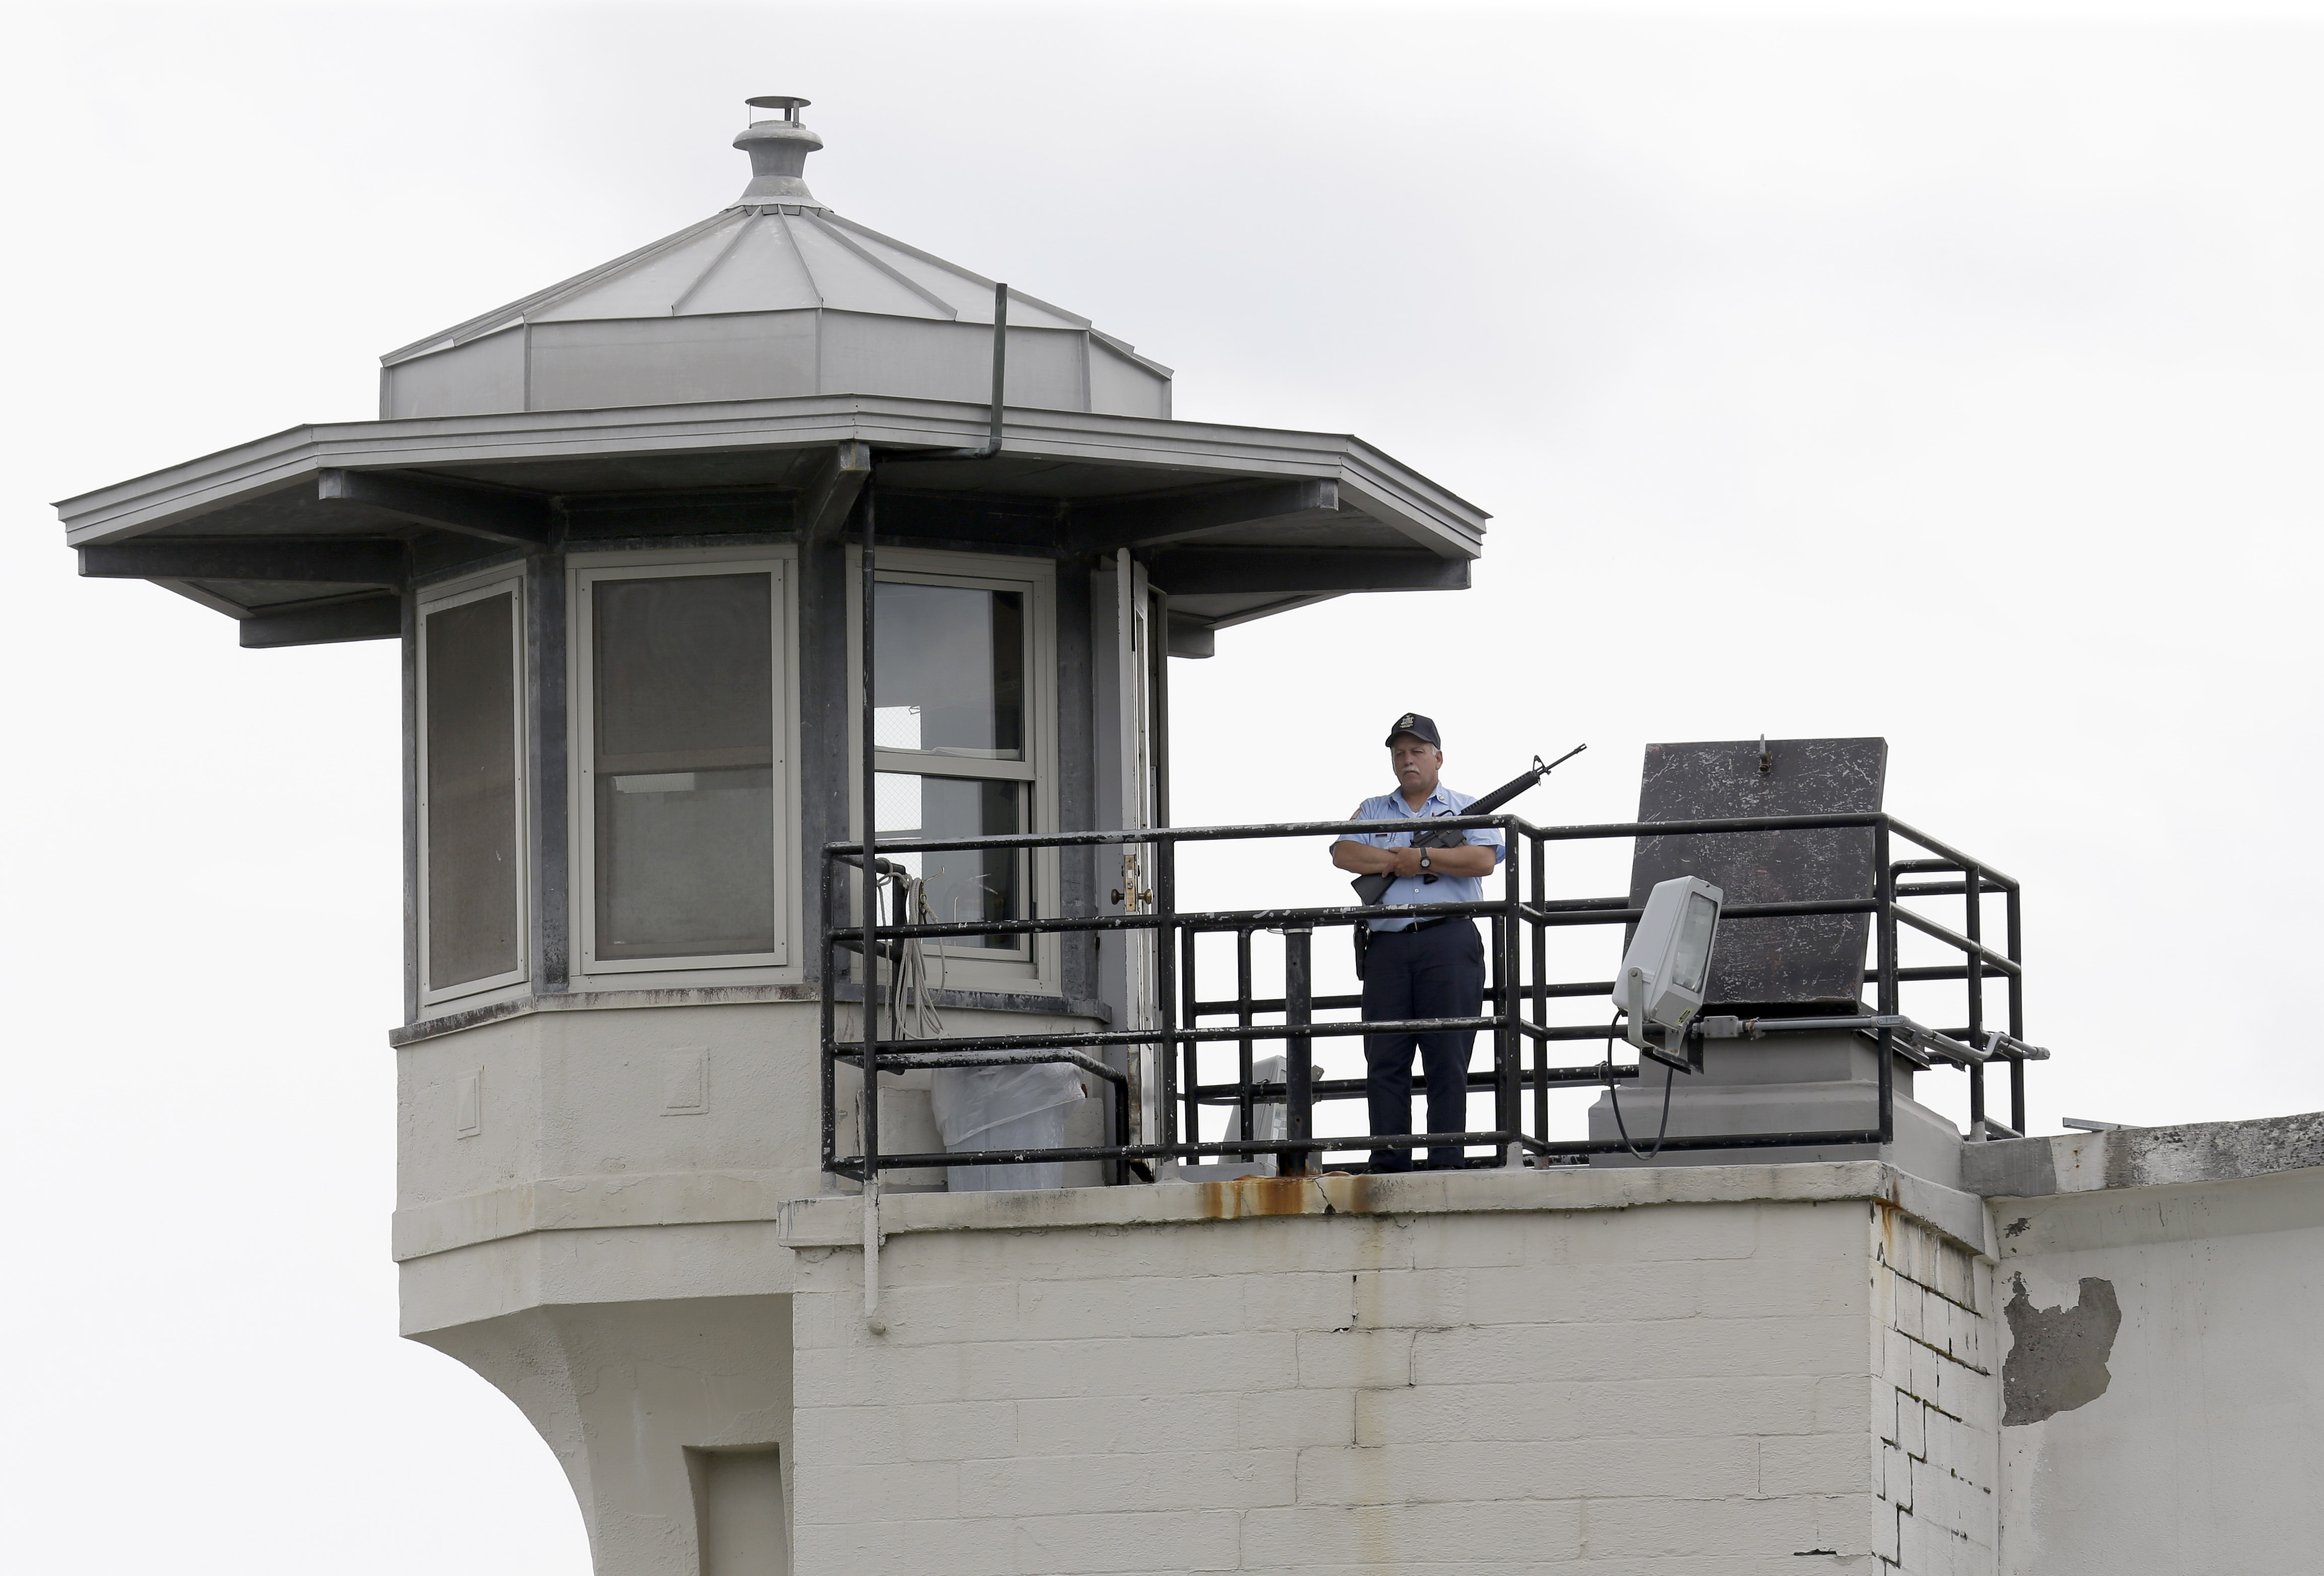 Dannemora, NY - Prison Break Spotlights Code Of Silence Behind Bars